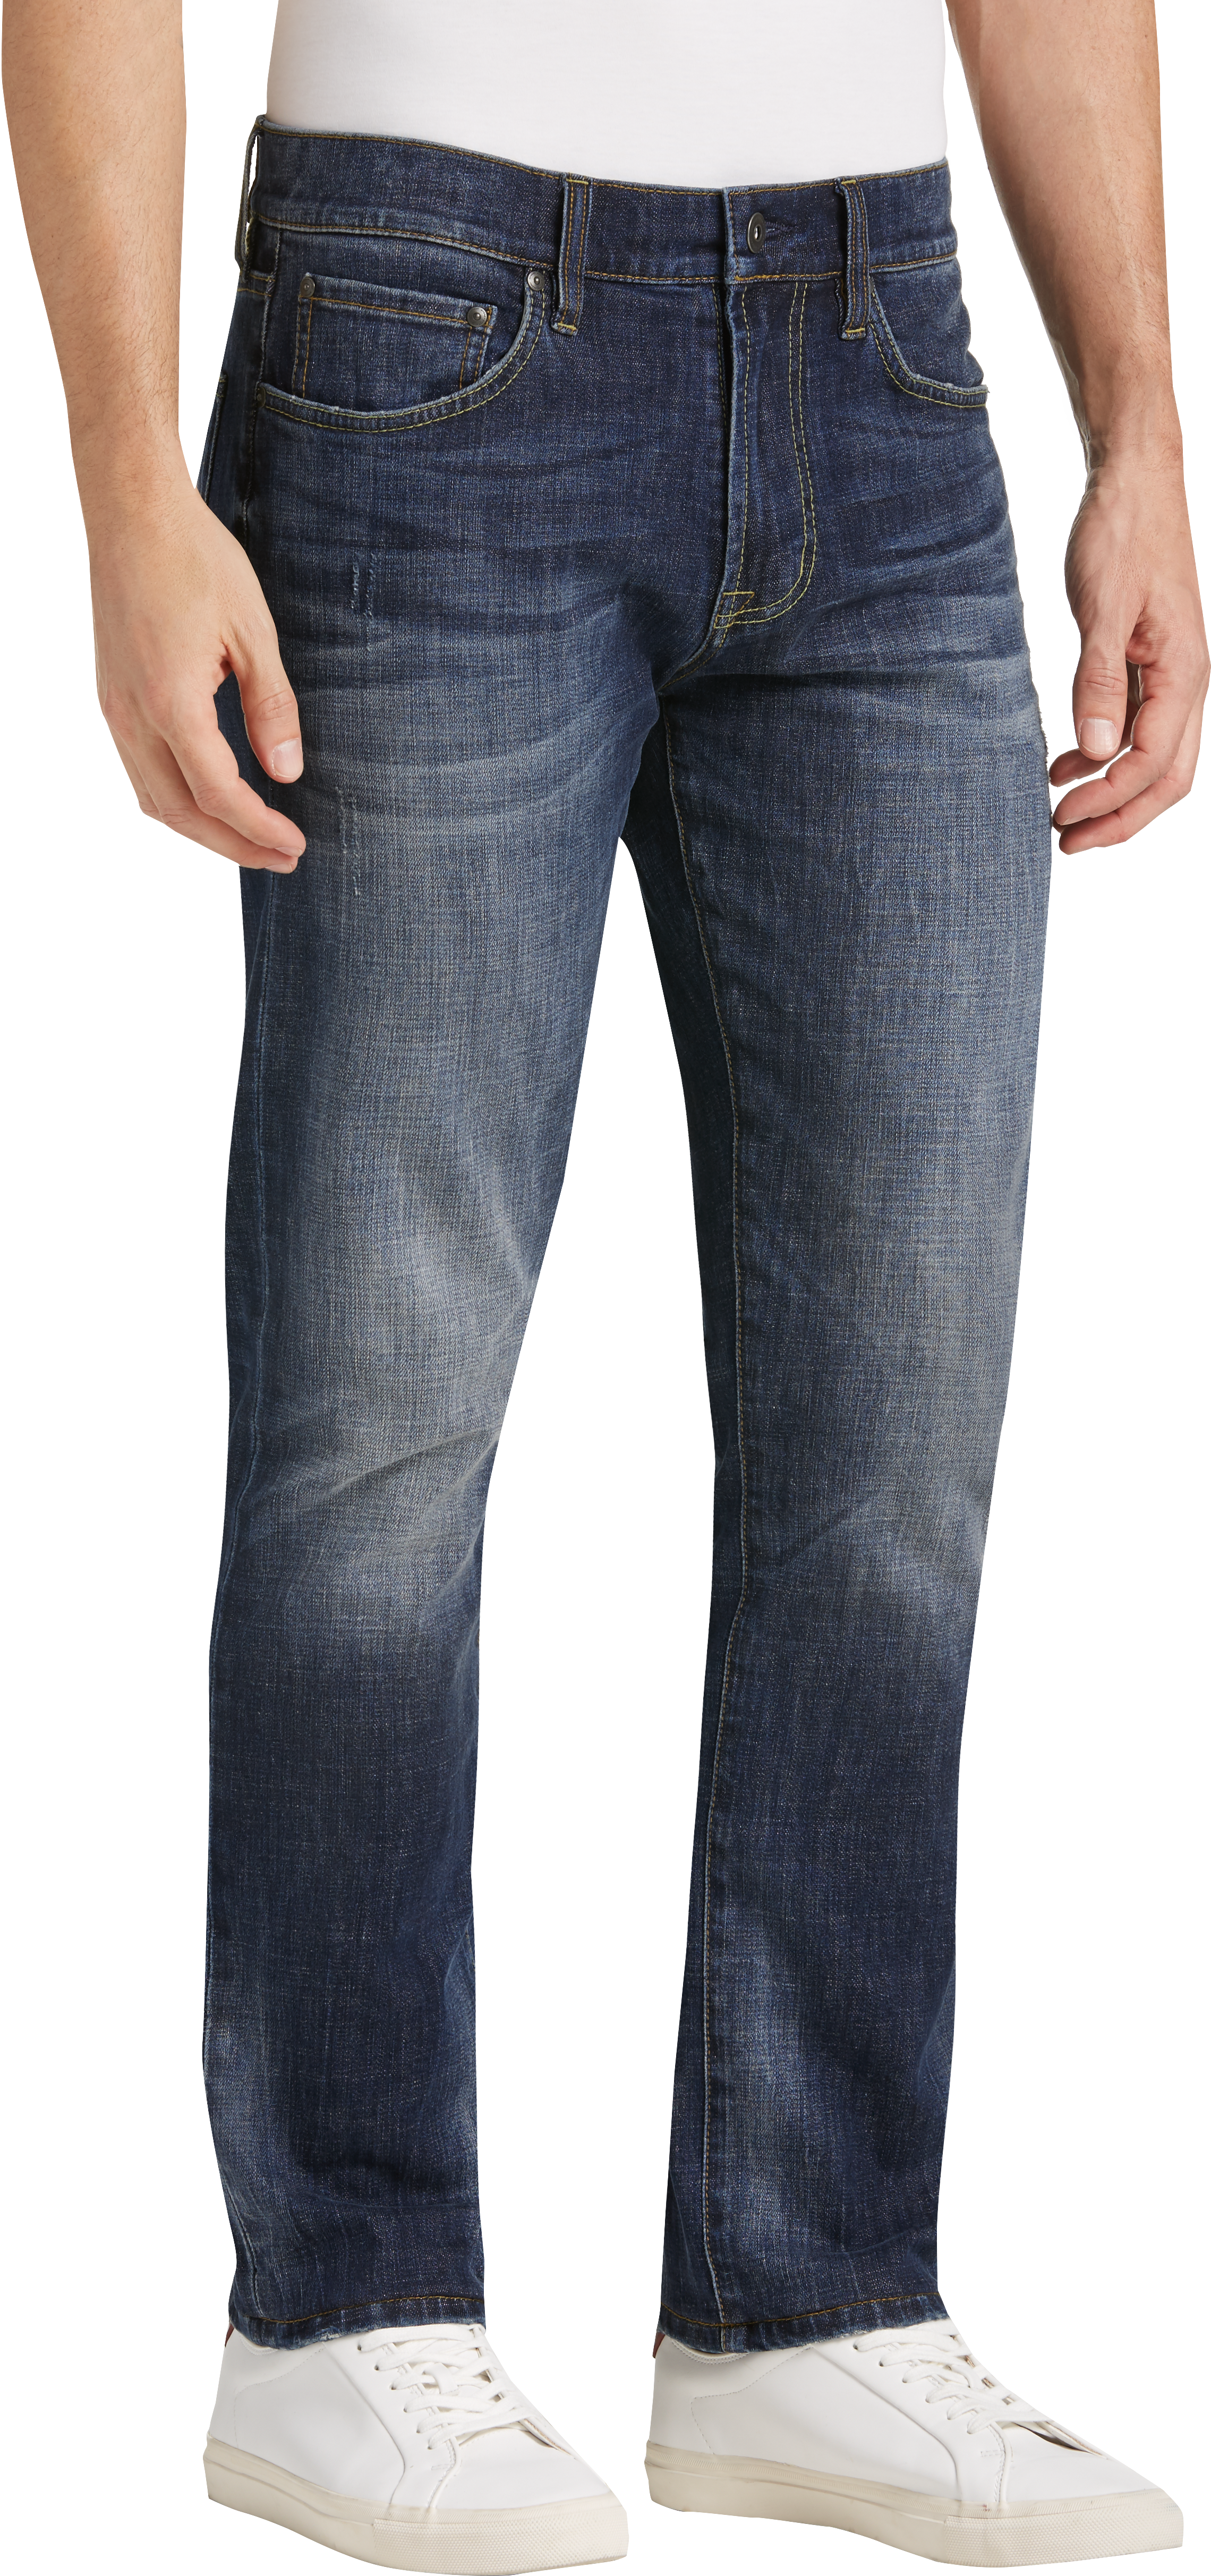 Joseph Abboud Saltwater Dark Blue Wash Slim Fit Jeans - Men's Pants ...